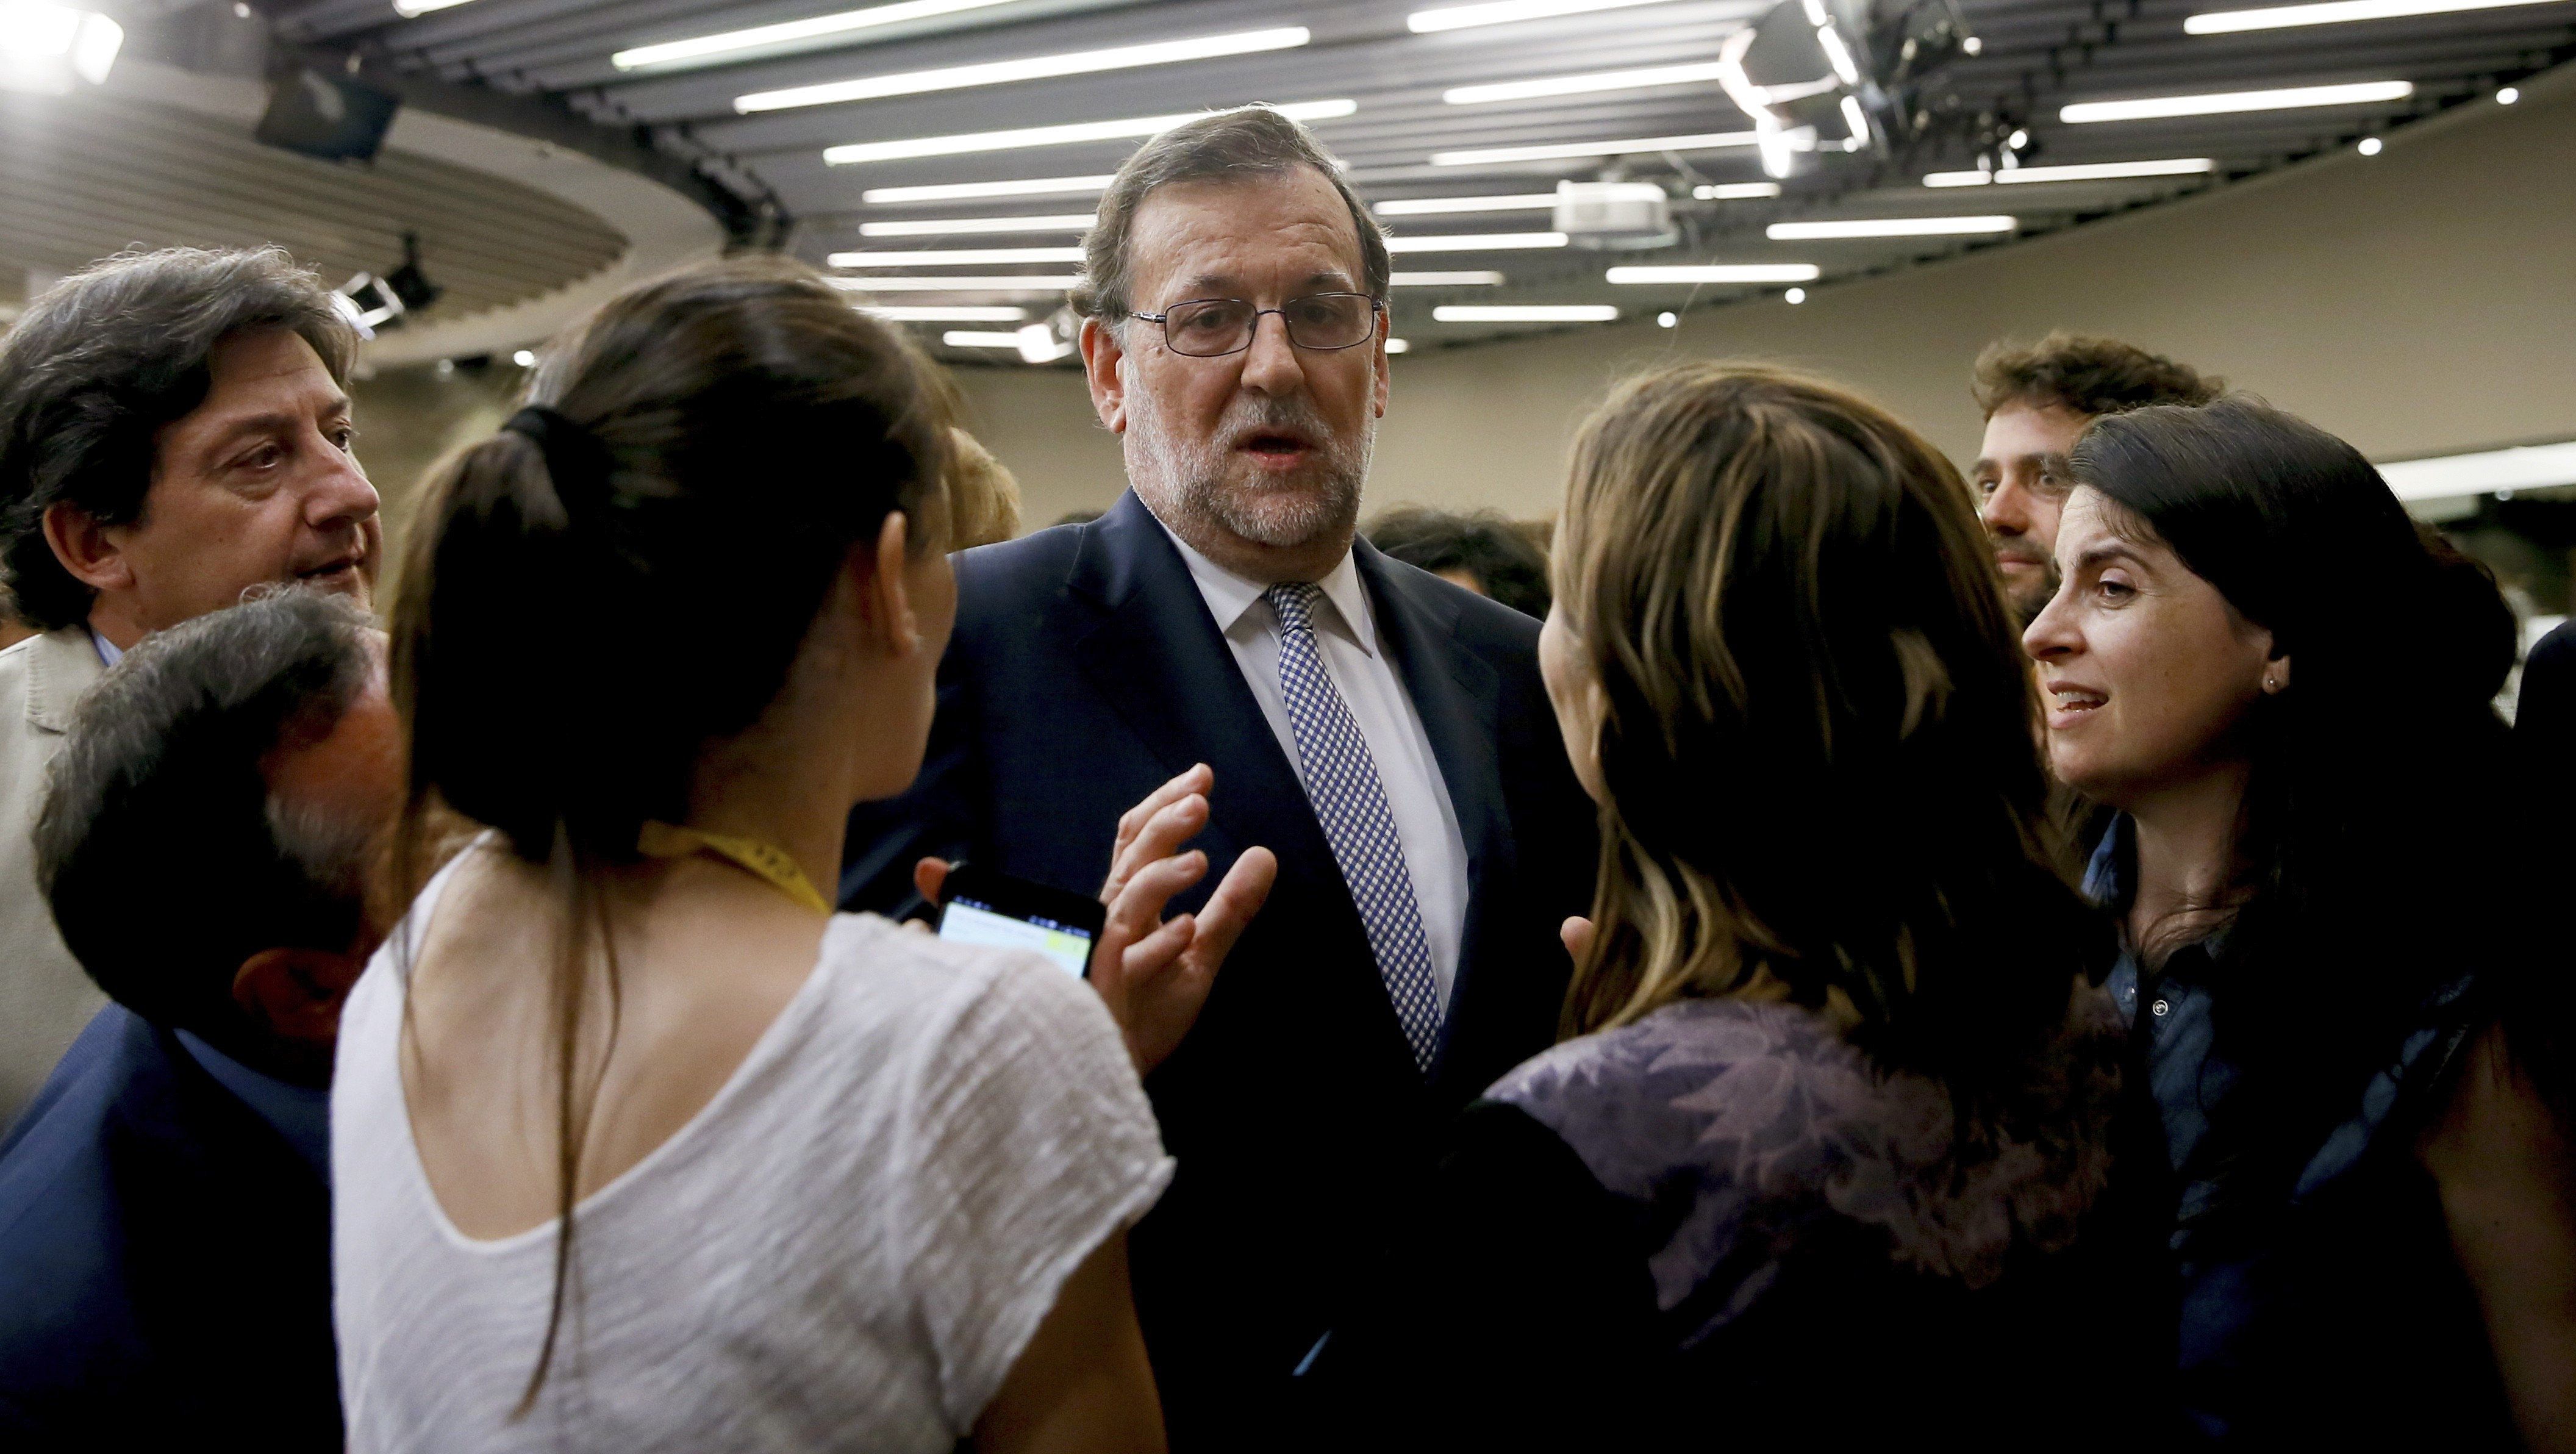 Rajoy manté els interrogants sobre la investidura davant d'una oposició immòbil